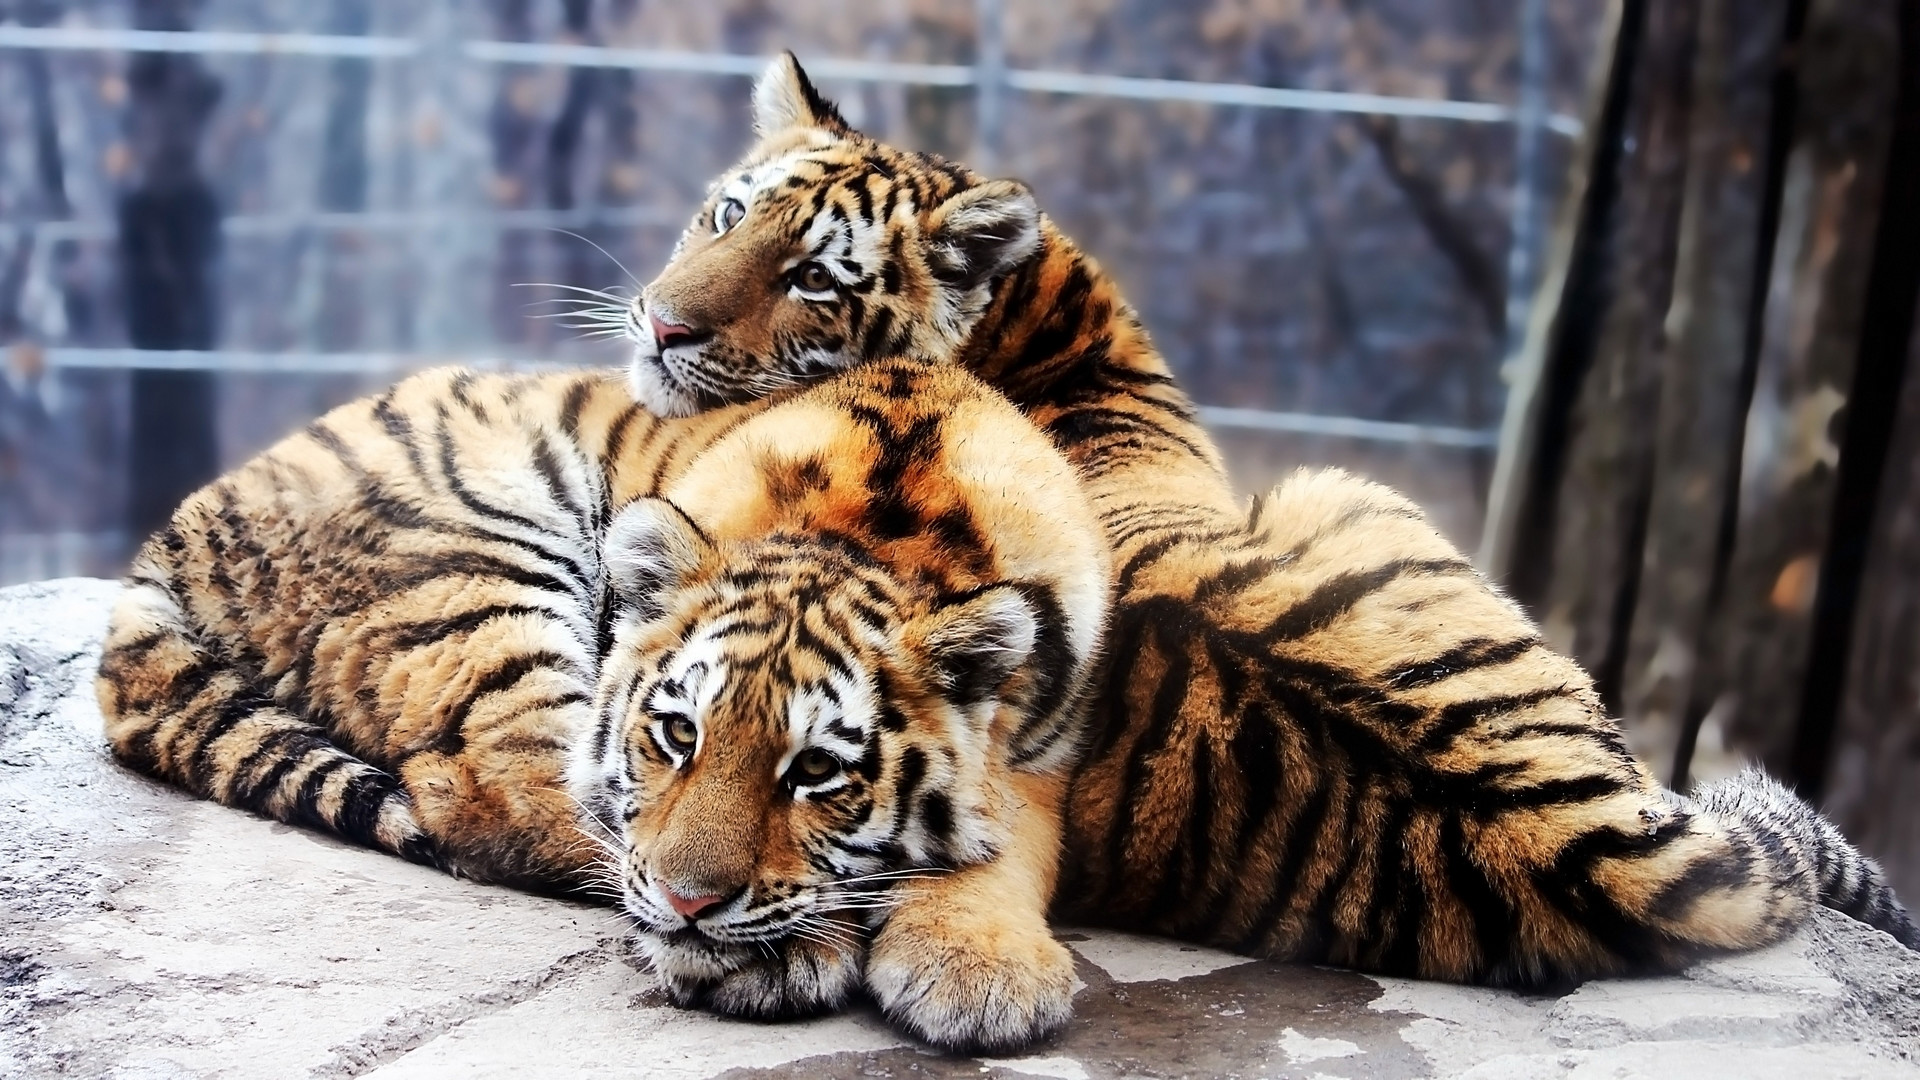 Картинку чтоб поставить. Тигр и тигрица. Тигр обои. Постер Тигренок. Заставка на компьютер животные.